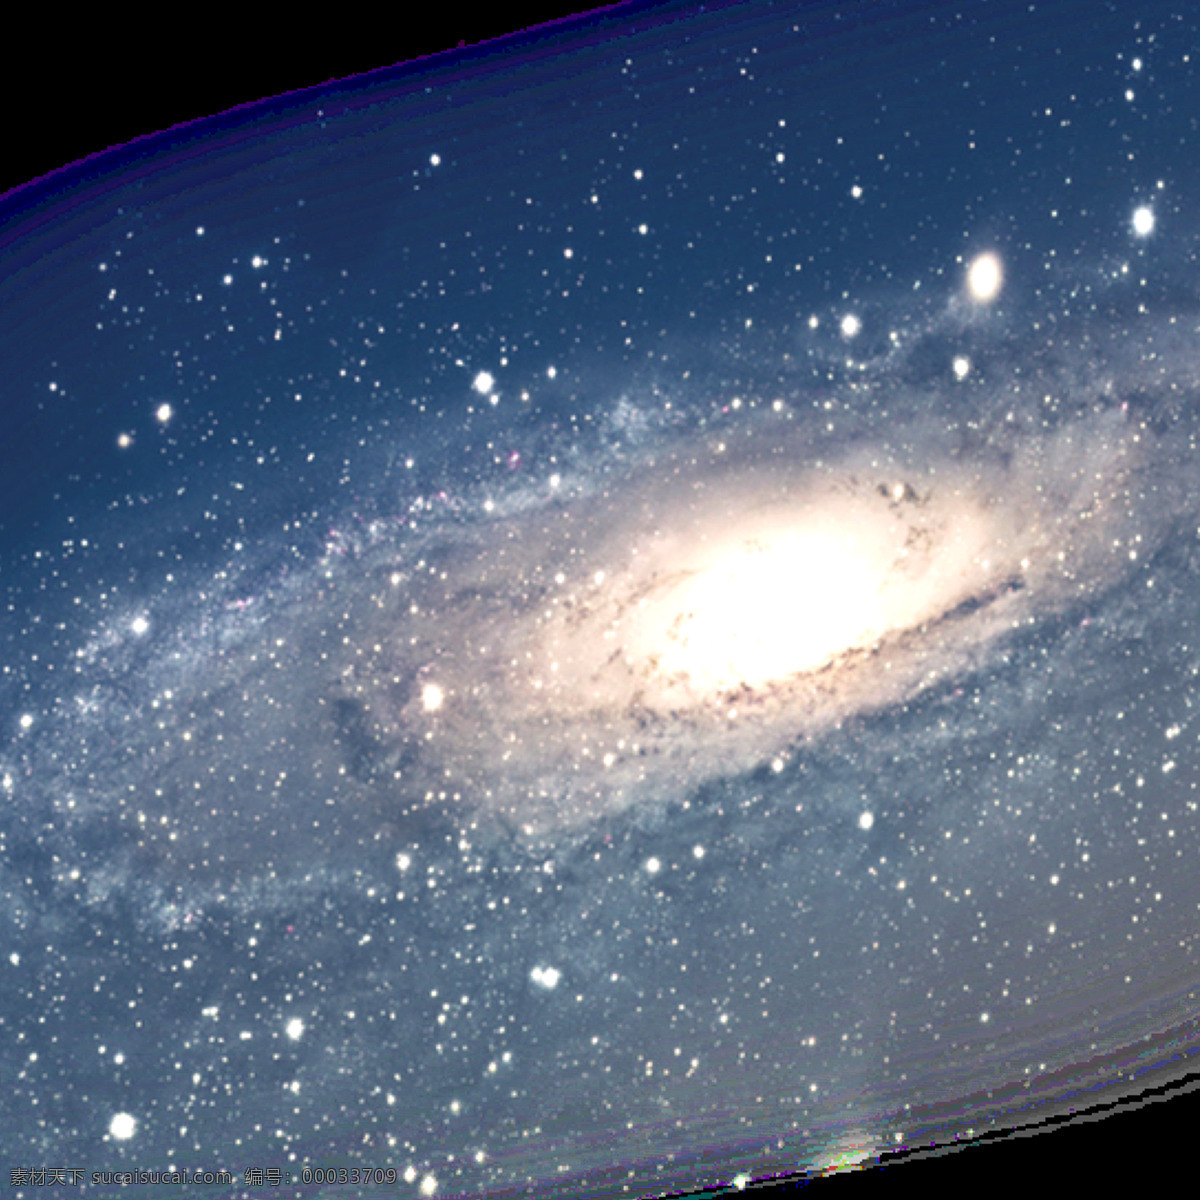 星海 星轨 星星 星体 天文学 学术 宇宙 行星 星系 外太空 自然 景象 背景 自然景观